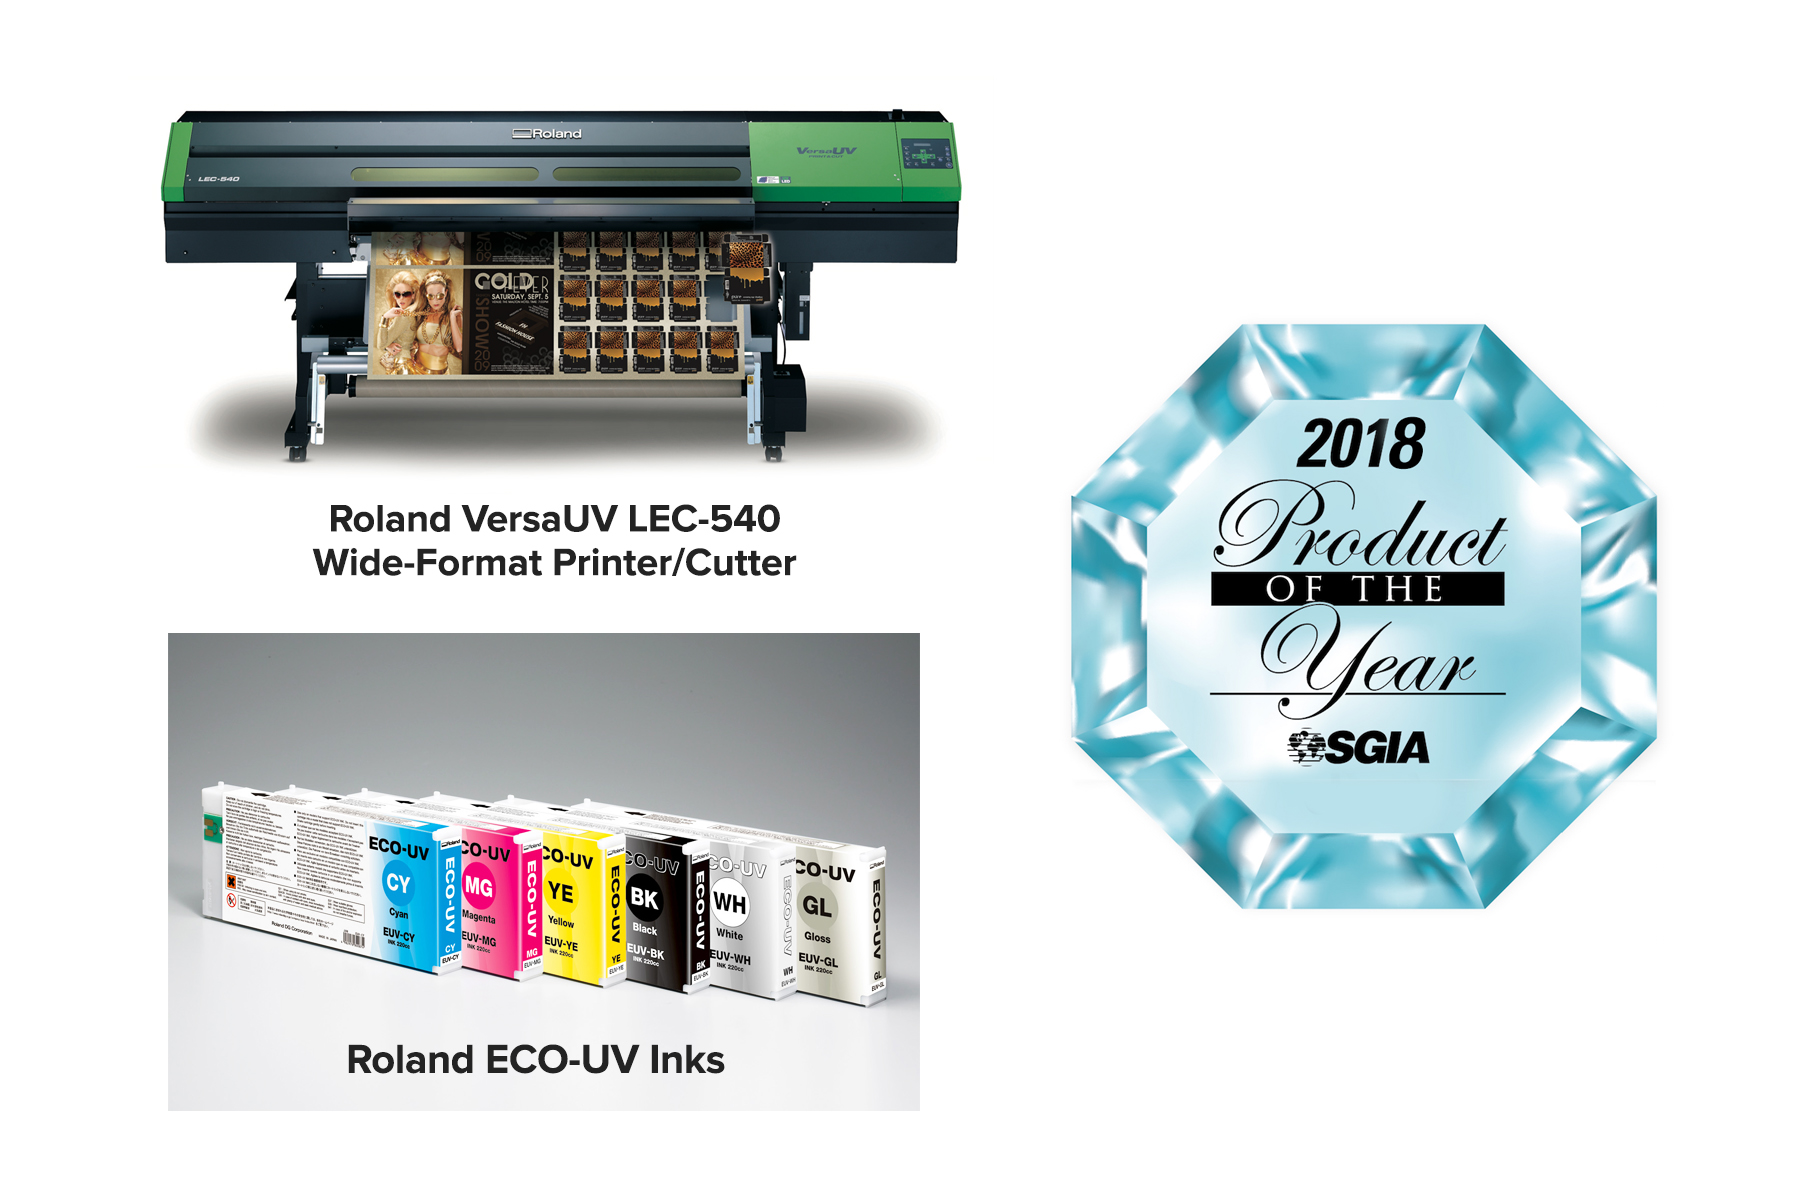 Impresora/cortadora VersaUV® LEC-540 y Tintas ECO-UV de Roland DG, ganadoras del premio Producto del Año de SGIA 2018